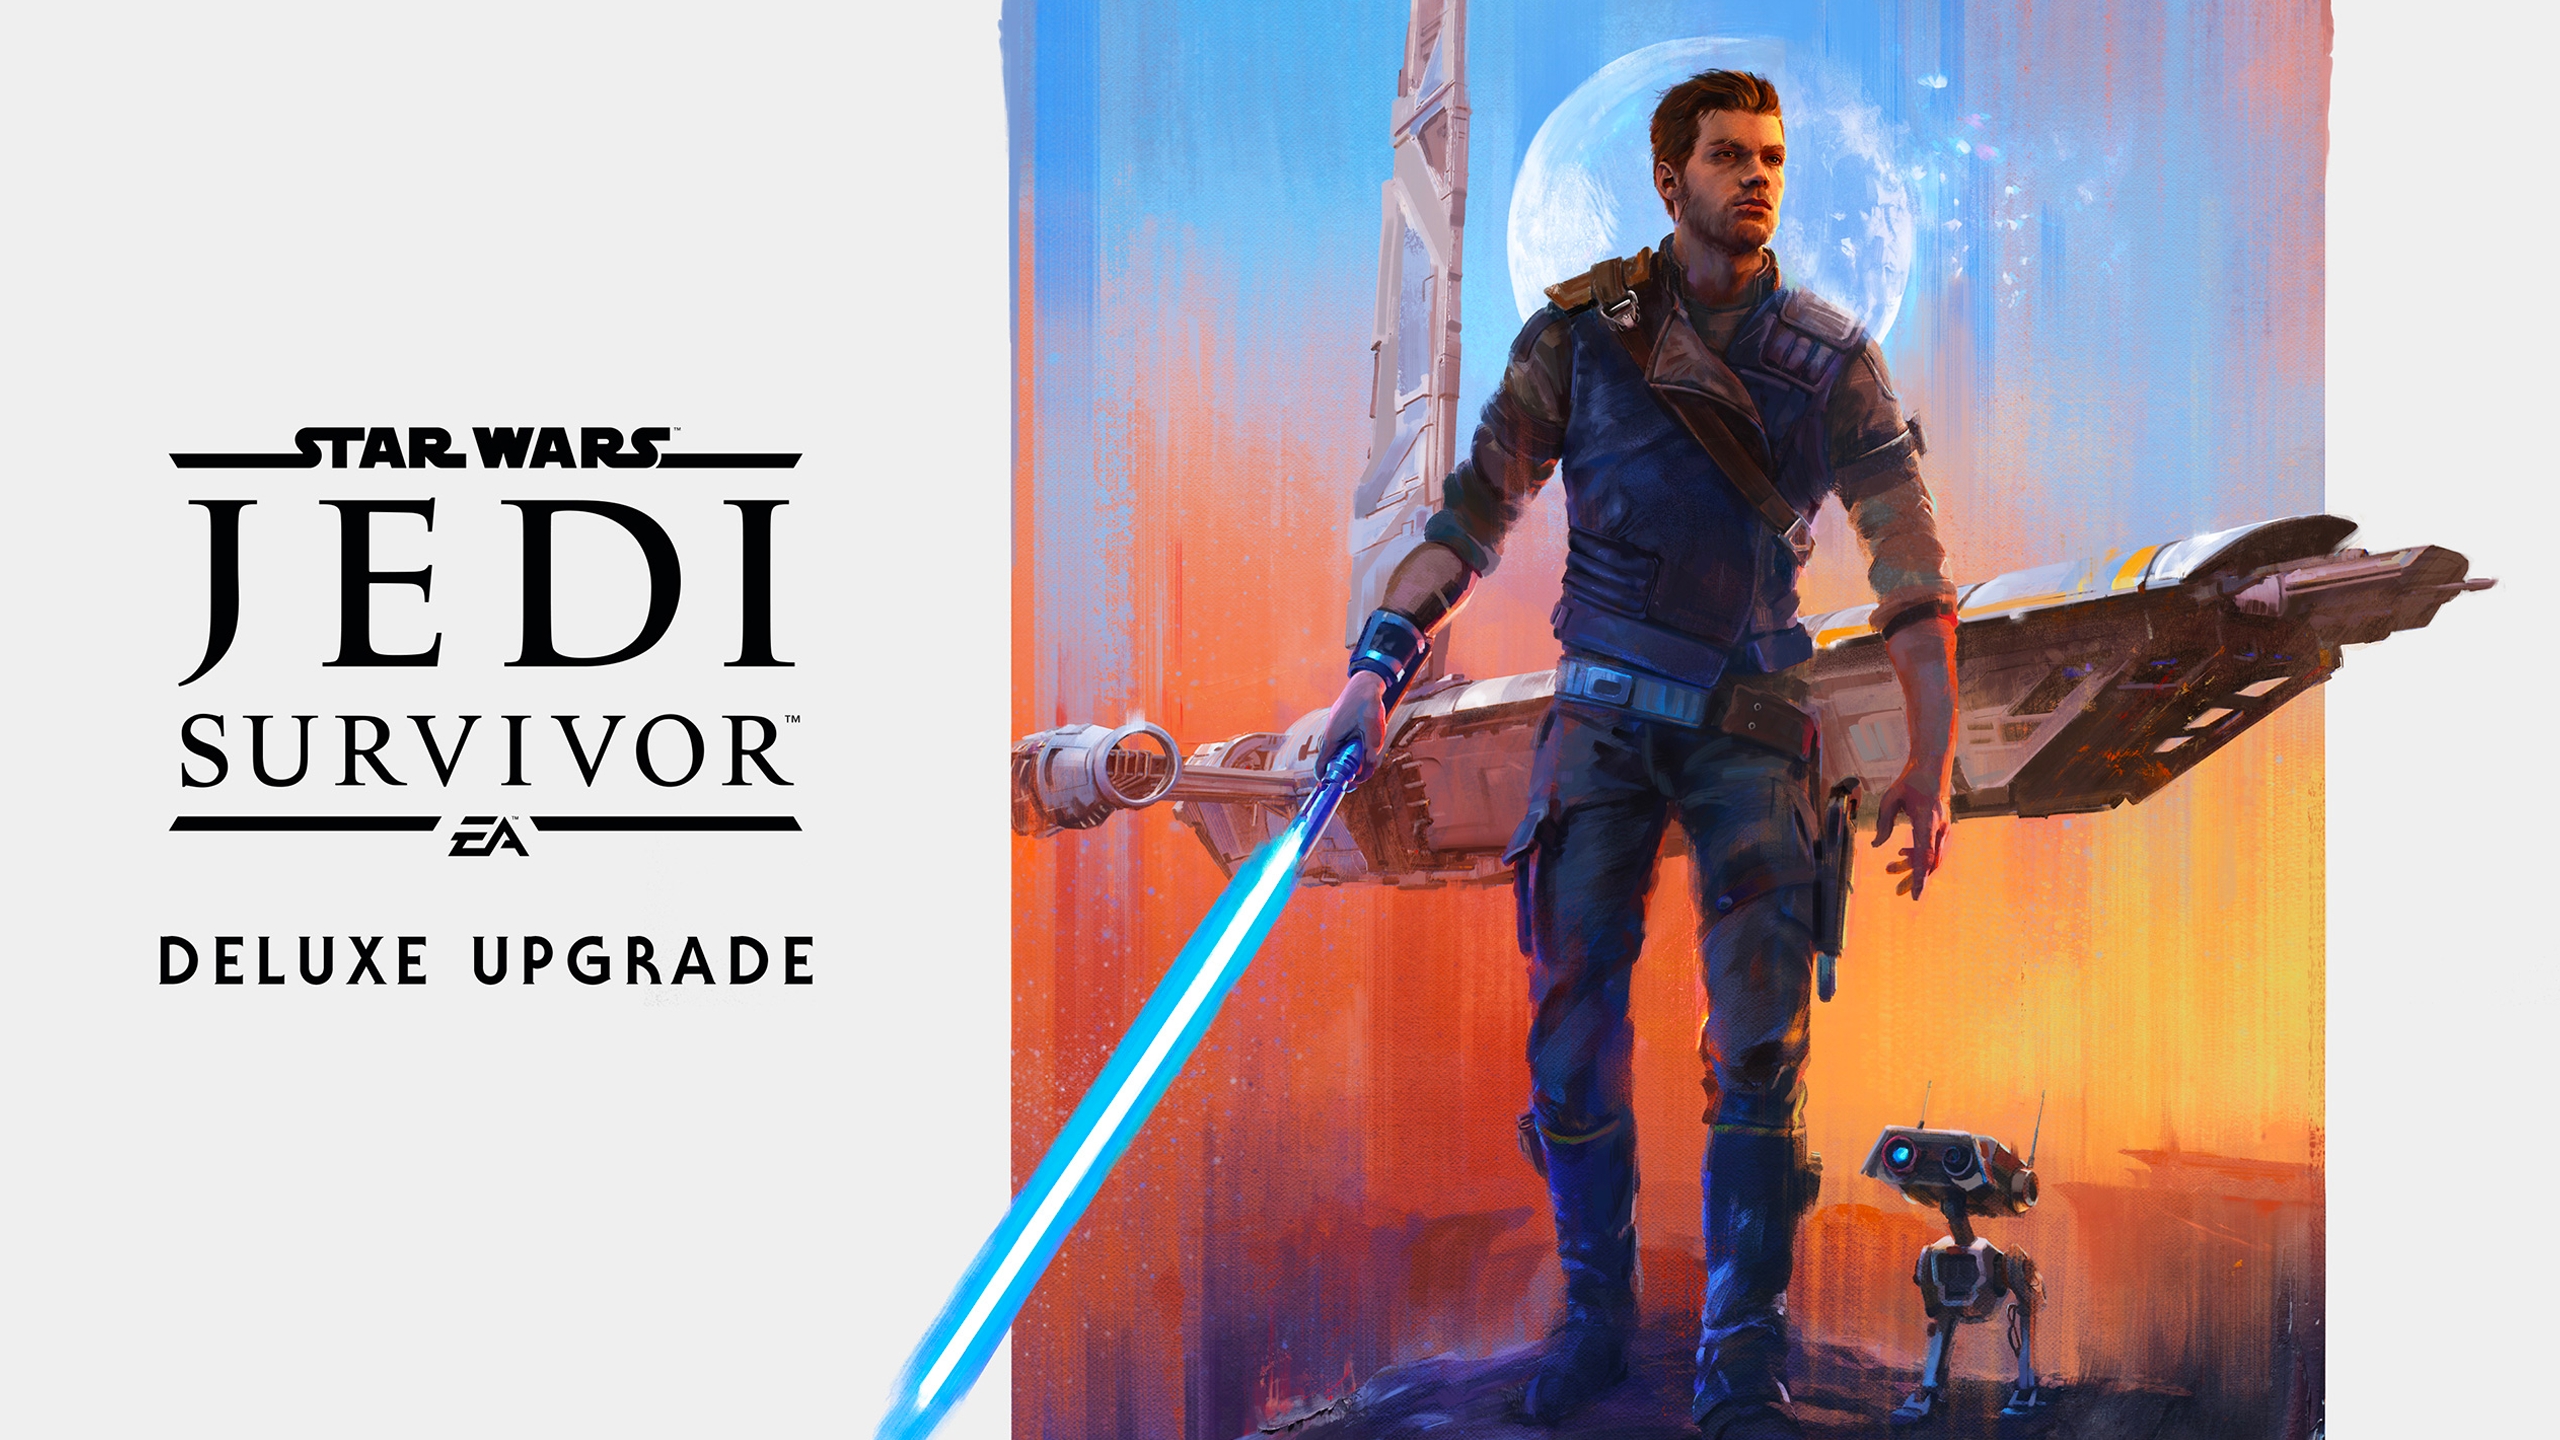 Buy Star Wars Jedi: Survivor Deluxe Upgrade EA App